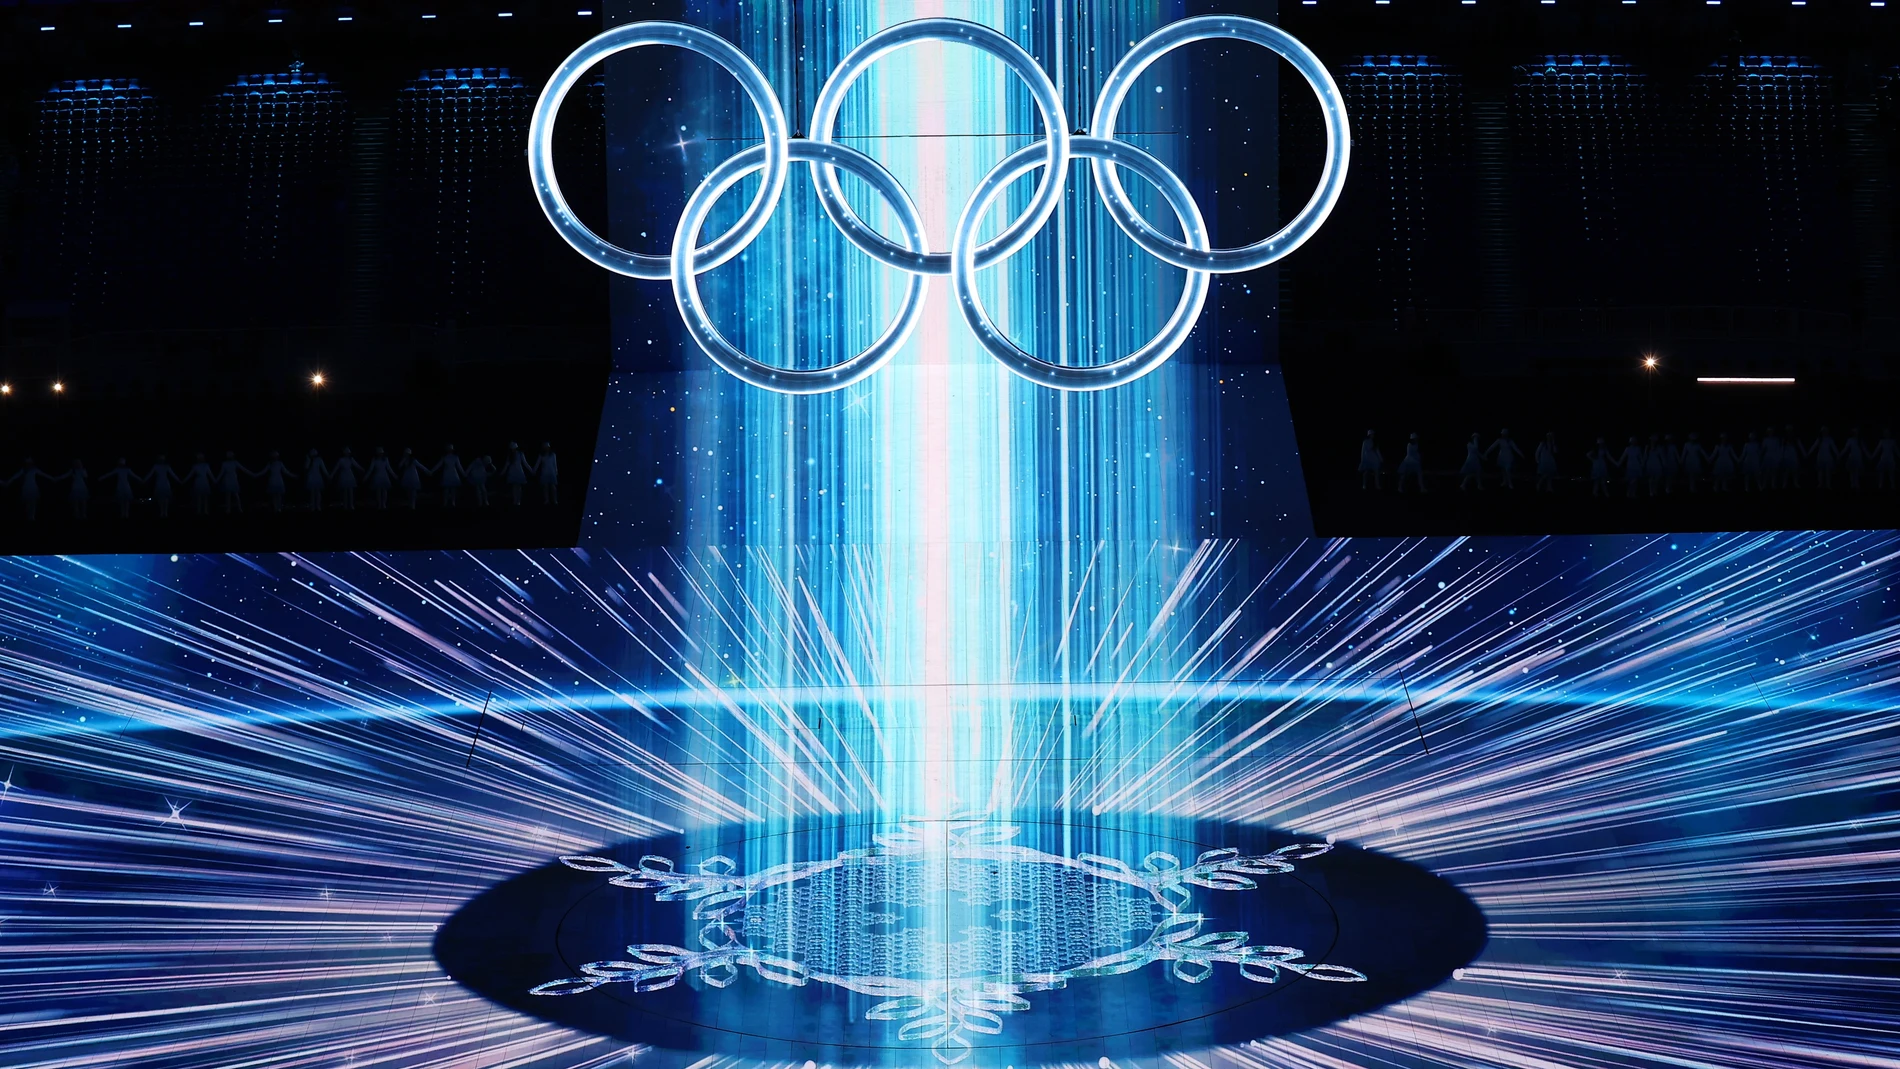 La ceremonia de apertura de los Juegos de Pekín 2022 fue espectacular